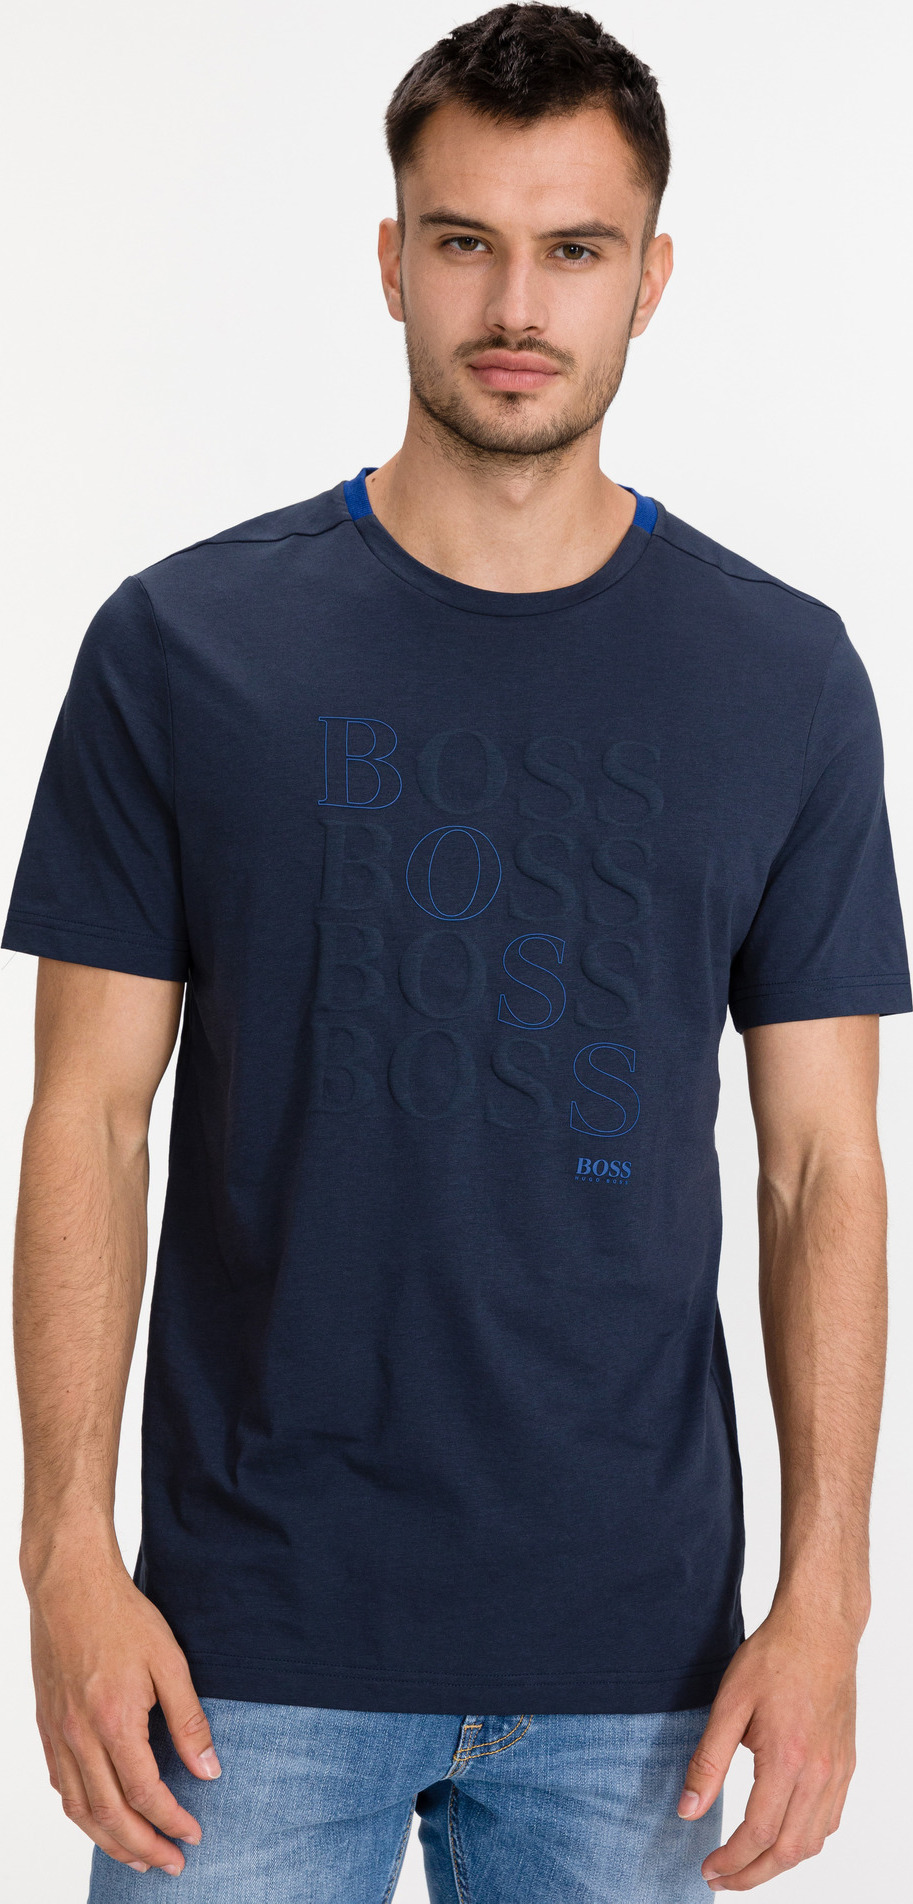 Bionic® Triko BOSS Modrá Boss